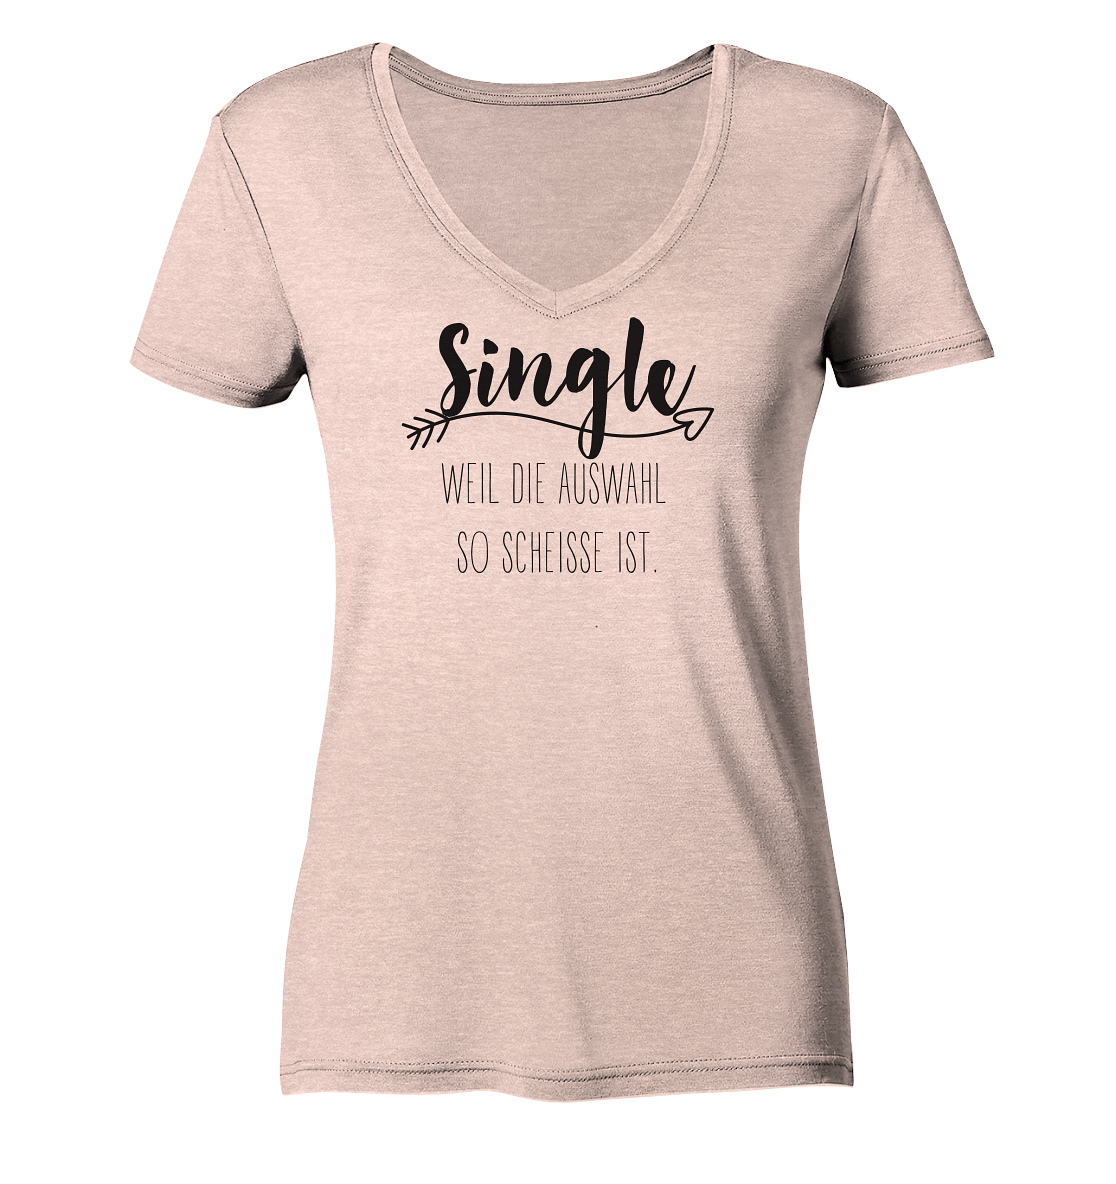 Single....weil die Auswahl so scheisse ist. - Ladies Organic V-Neck Shirt